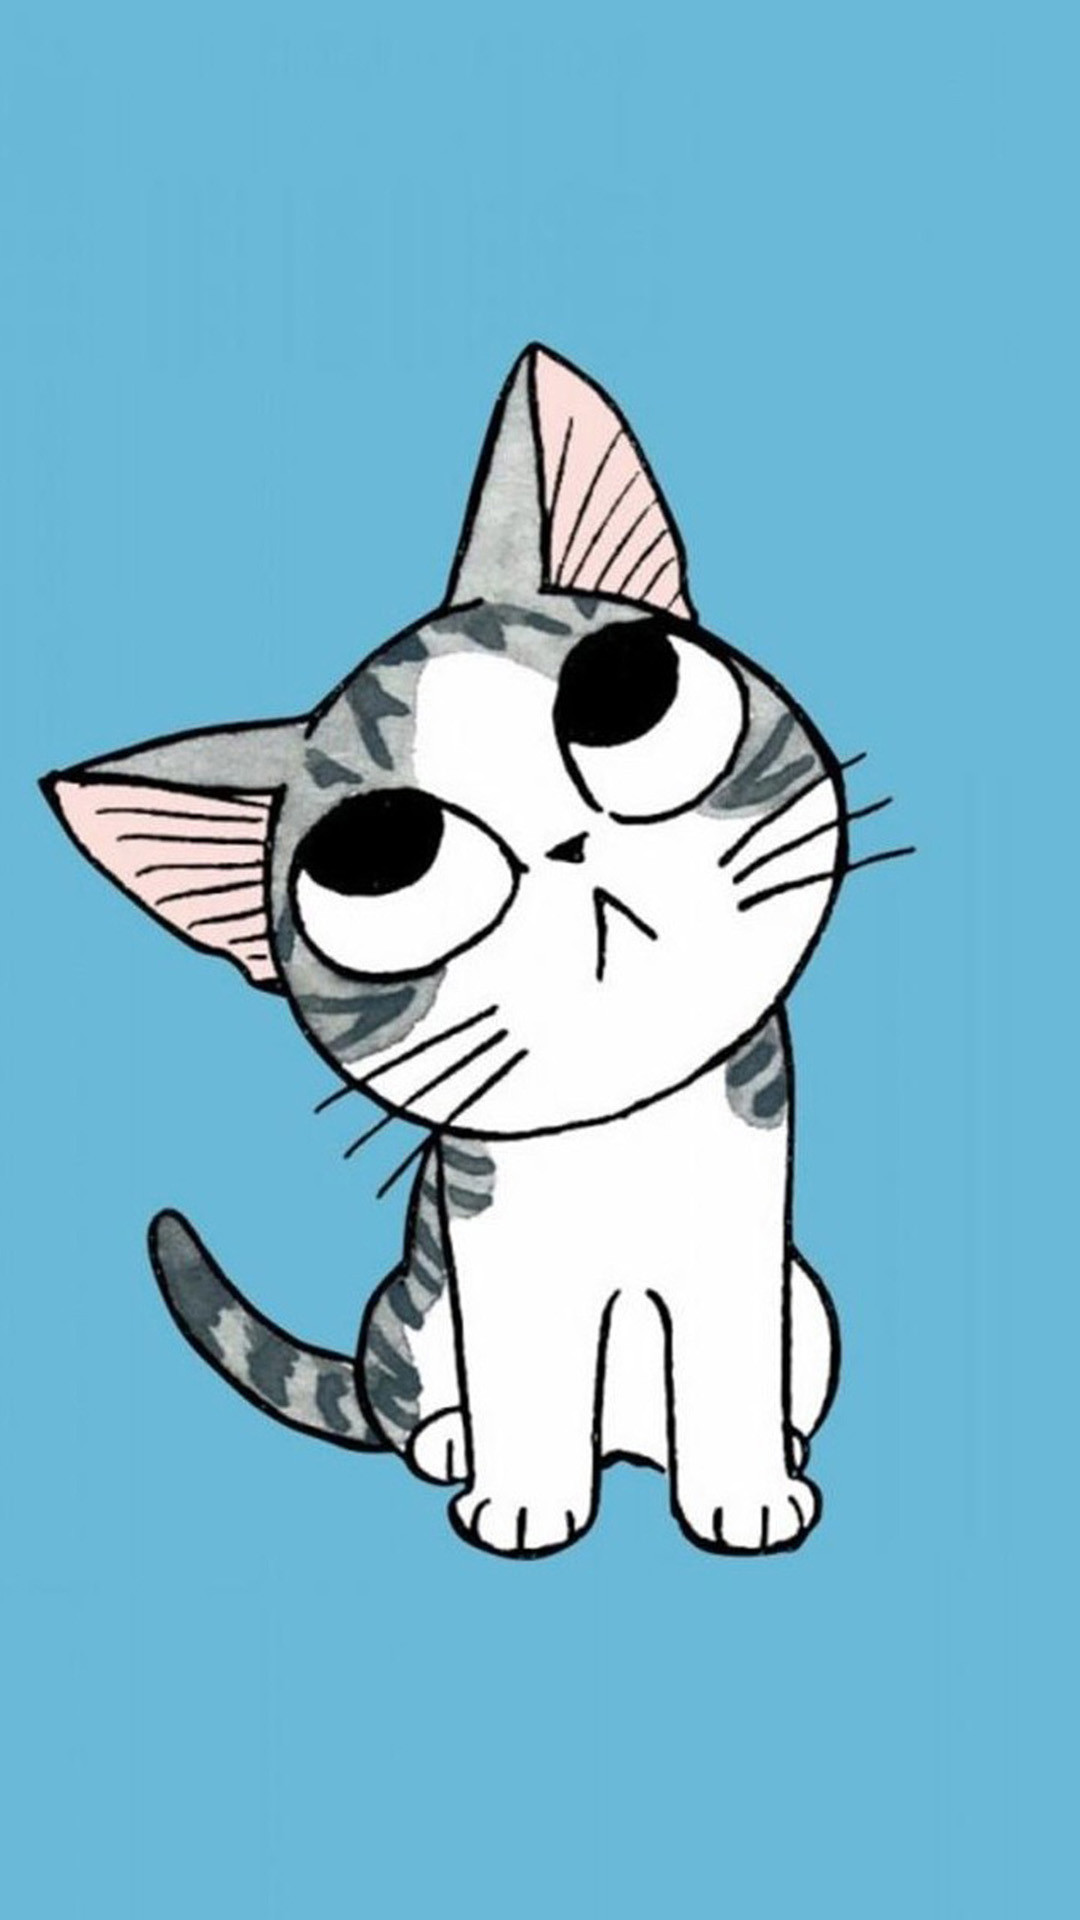 1080x1920 Cute cat cartoon Galaxy S Wallpapers 1